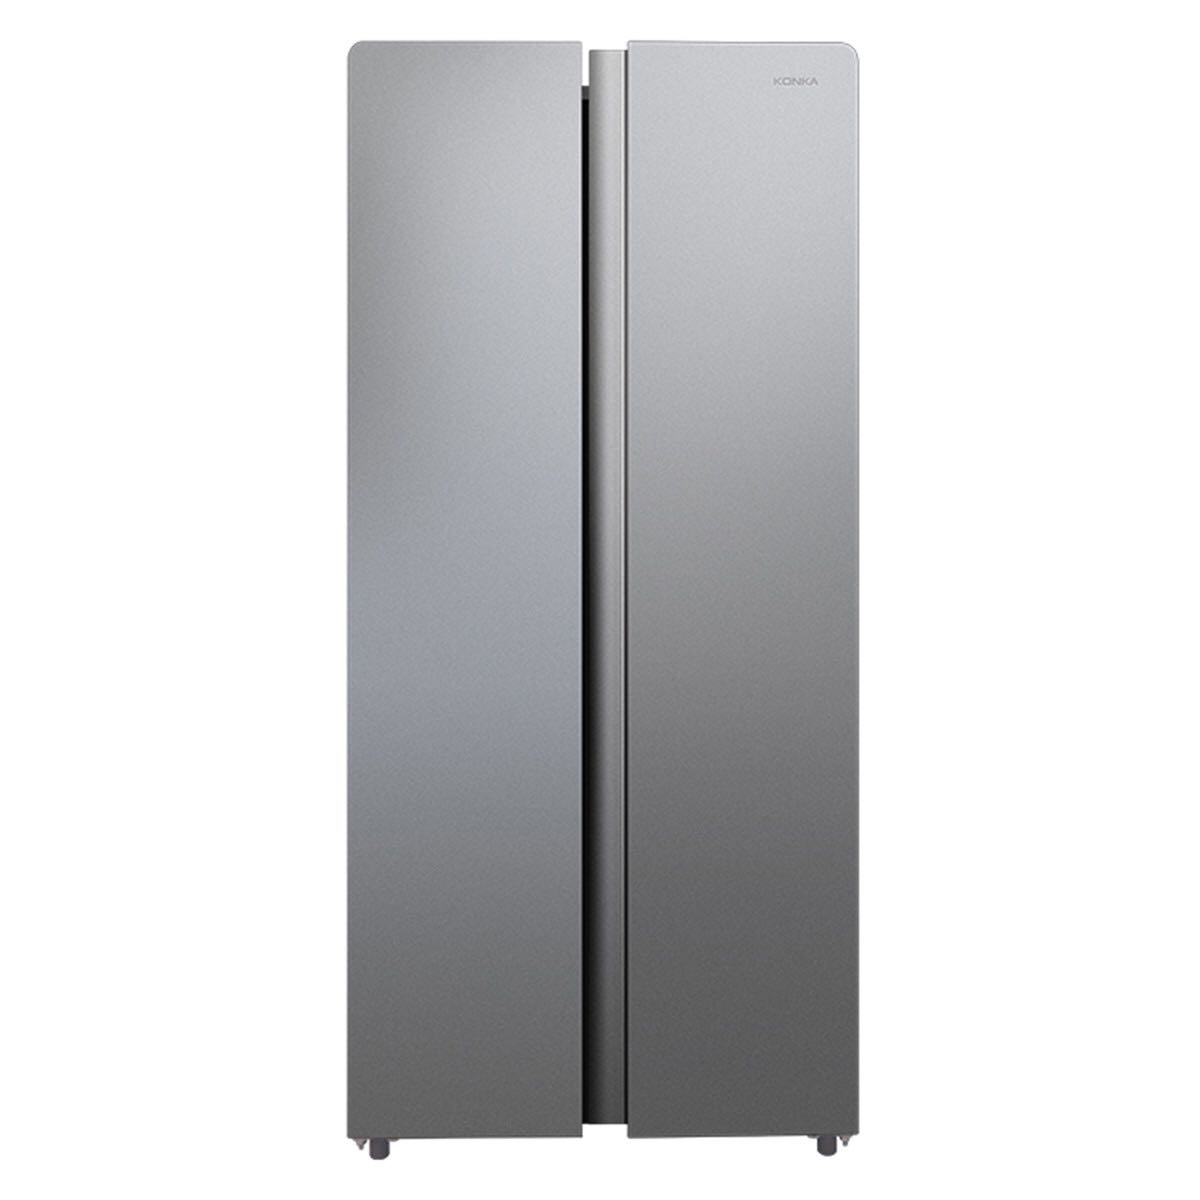 KONKA 康佳 BCD-403WEGY5S 对开门冰箱 403L 1599元